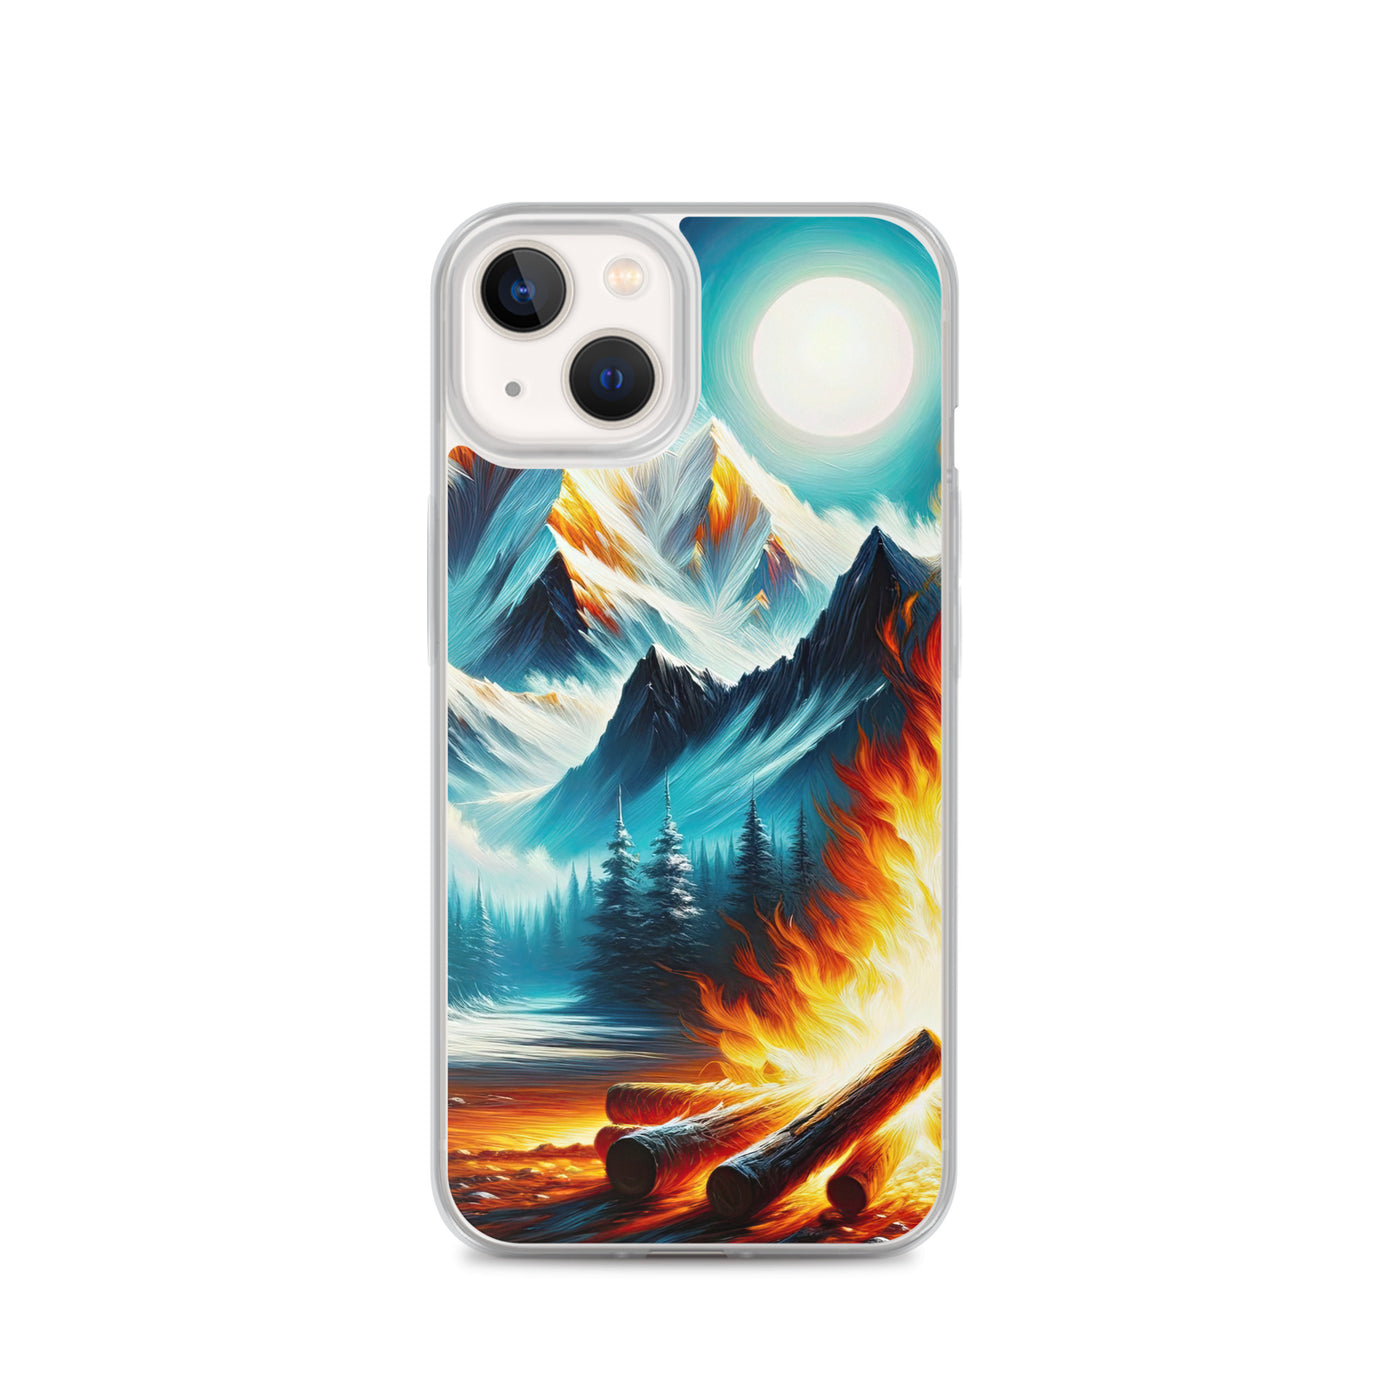 Ölgemälde von Feuer und Eis: Lagerfeuer und Alpen im Kontrast, warme Flammen - iPhone Schutzhülle (durchsichtig) camping xxx yyy zzz iPhone 13